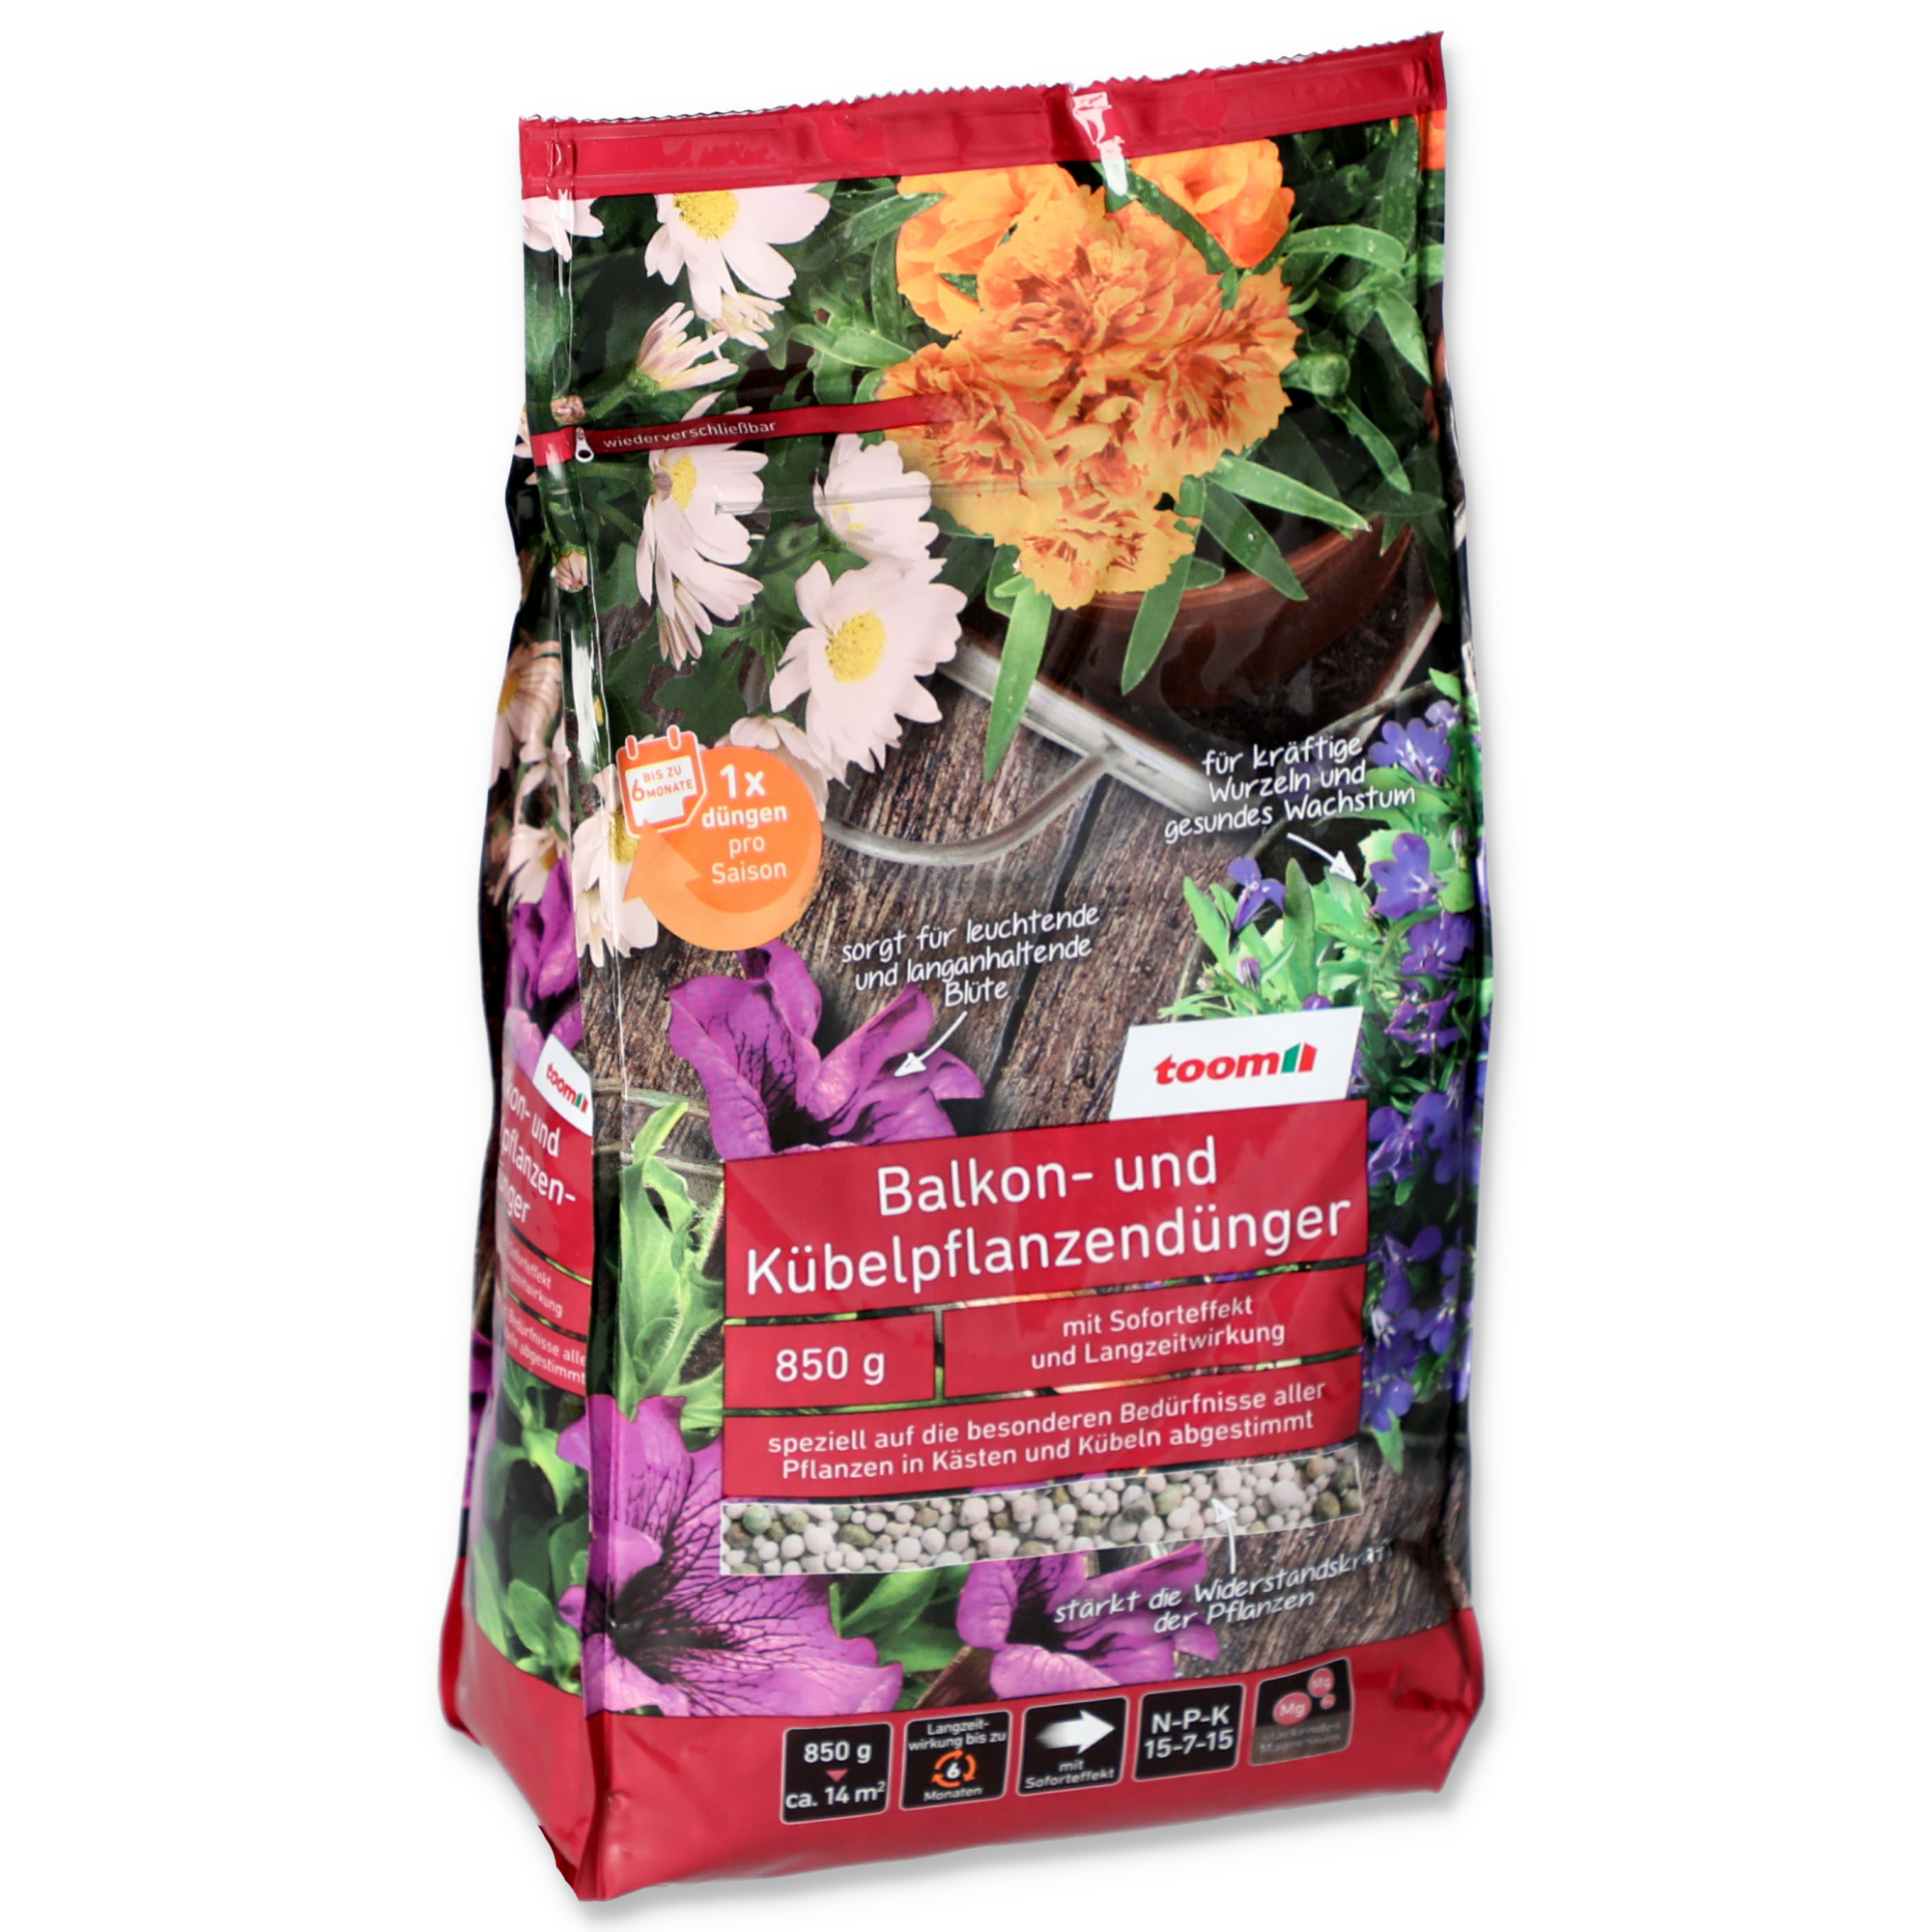 Balkon- und Kübelpflanzendünger 850 g + product picture